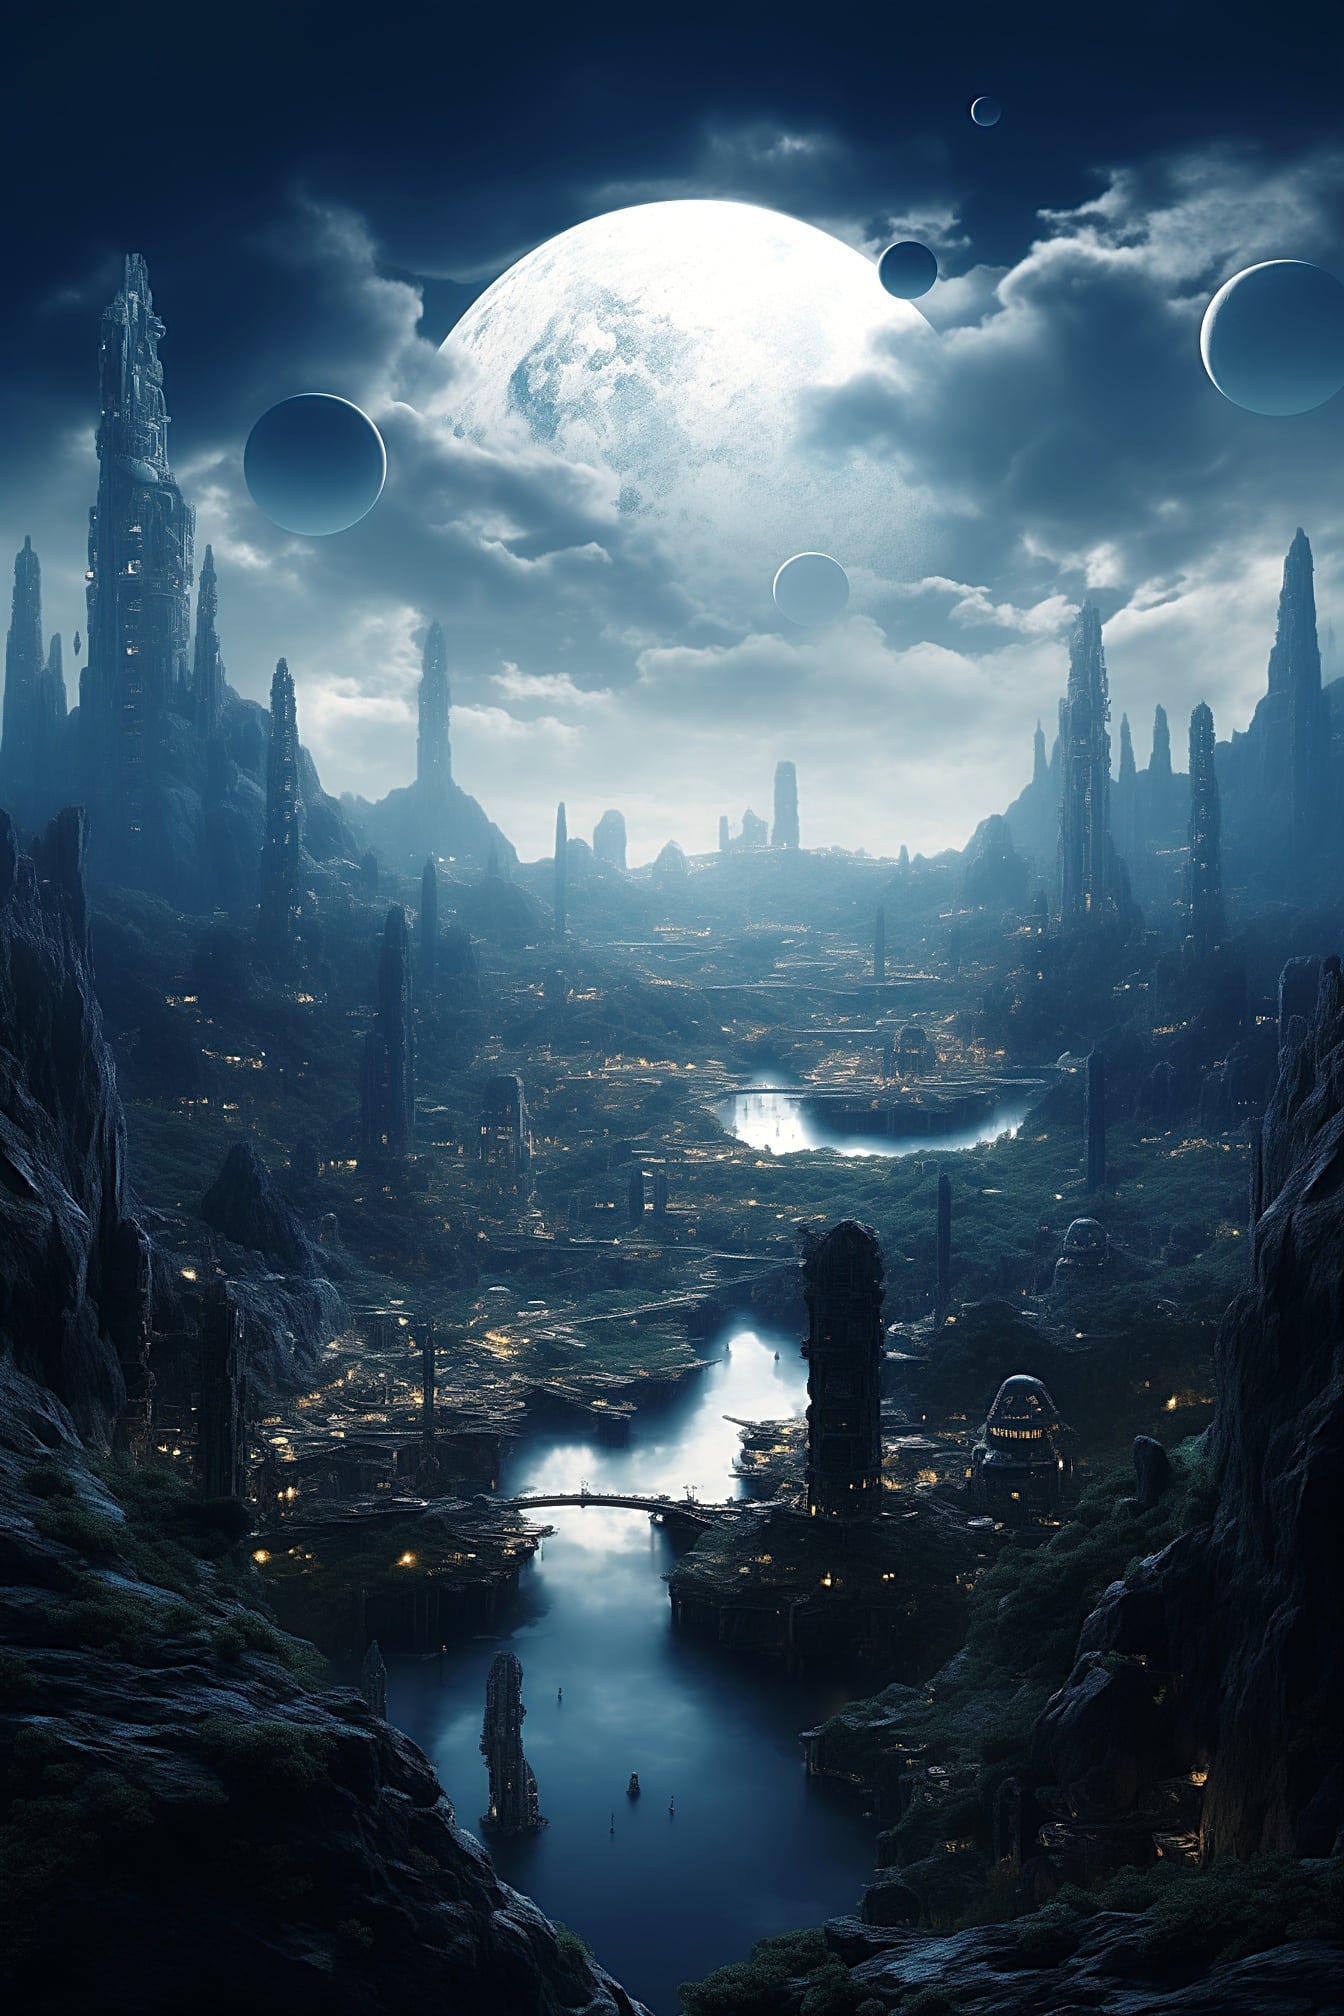 Futuristisk metropol på en fjern planet som skildrer en fengslende science fiction-atmosfære